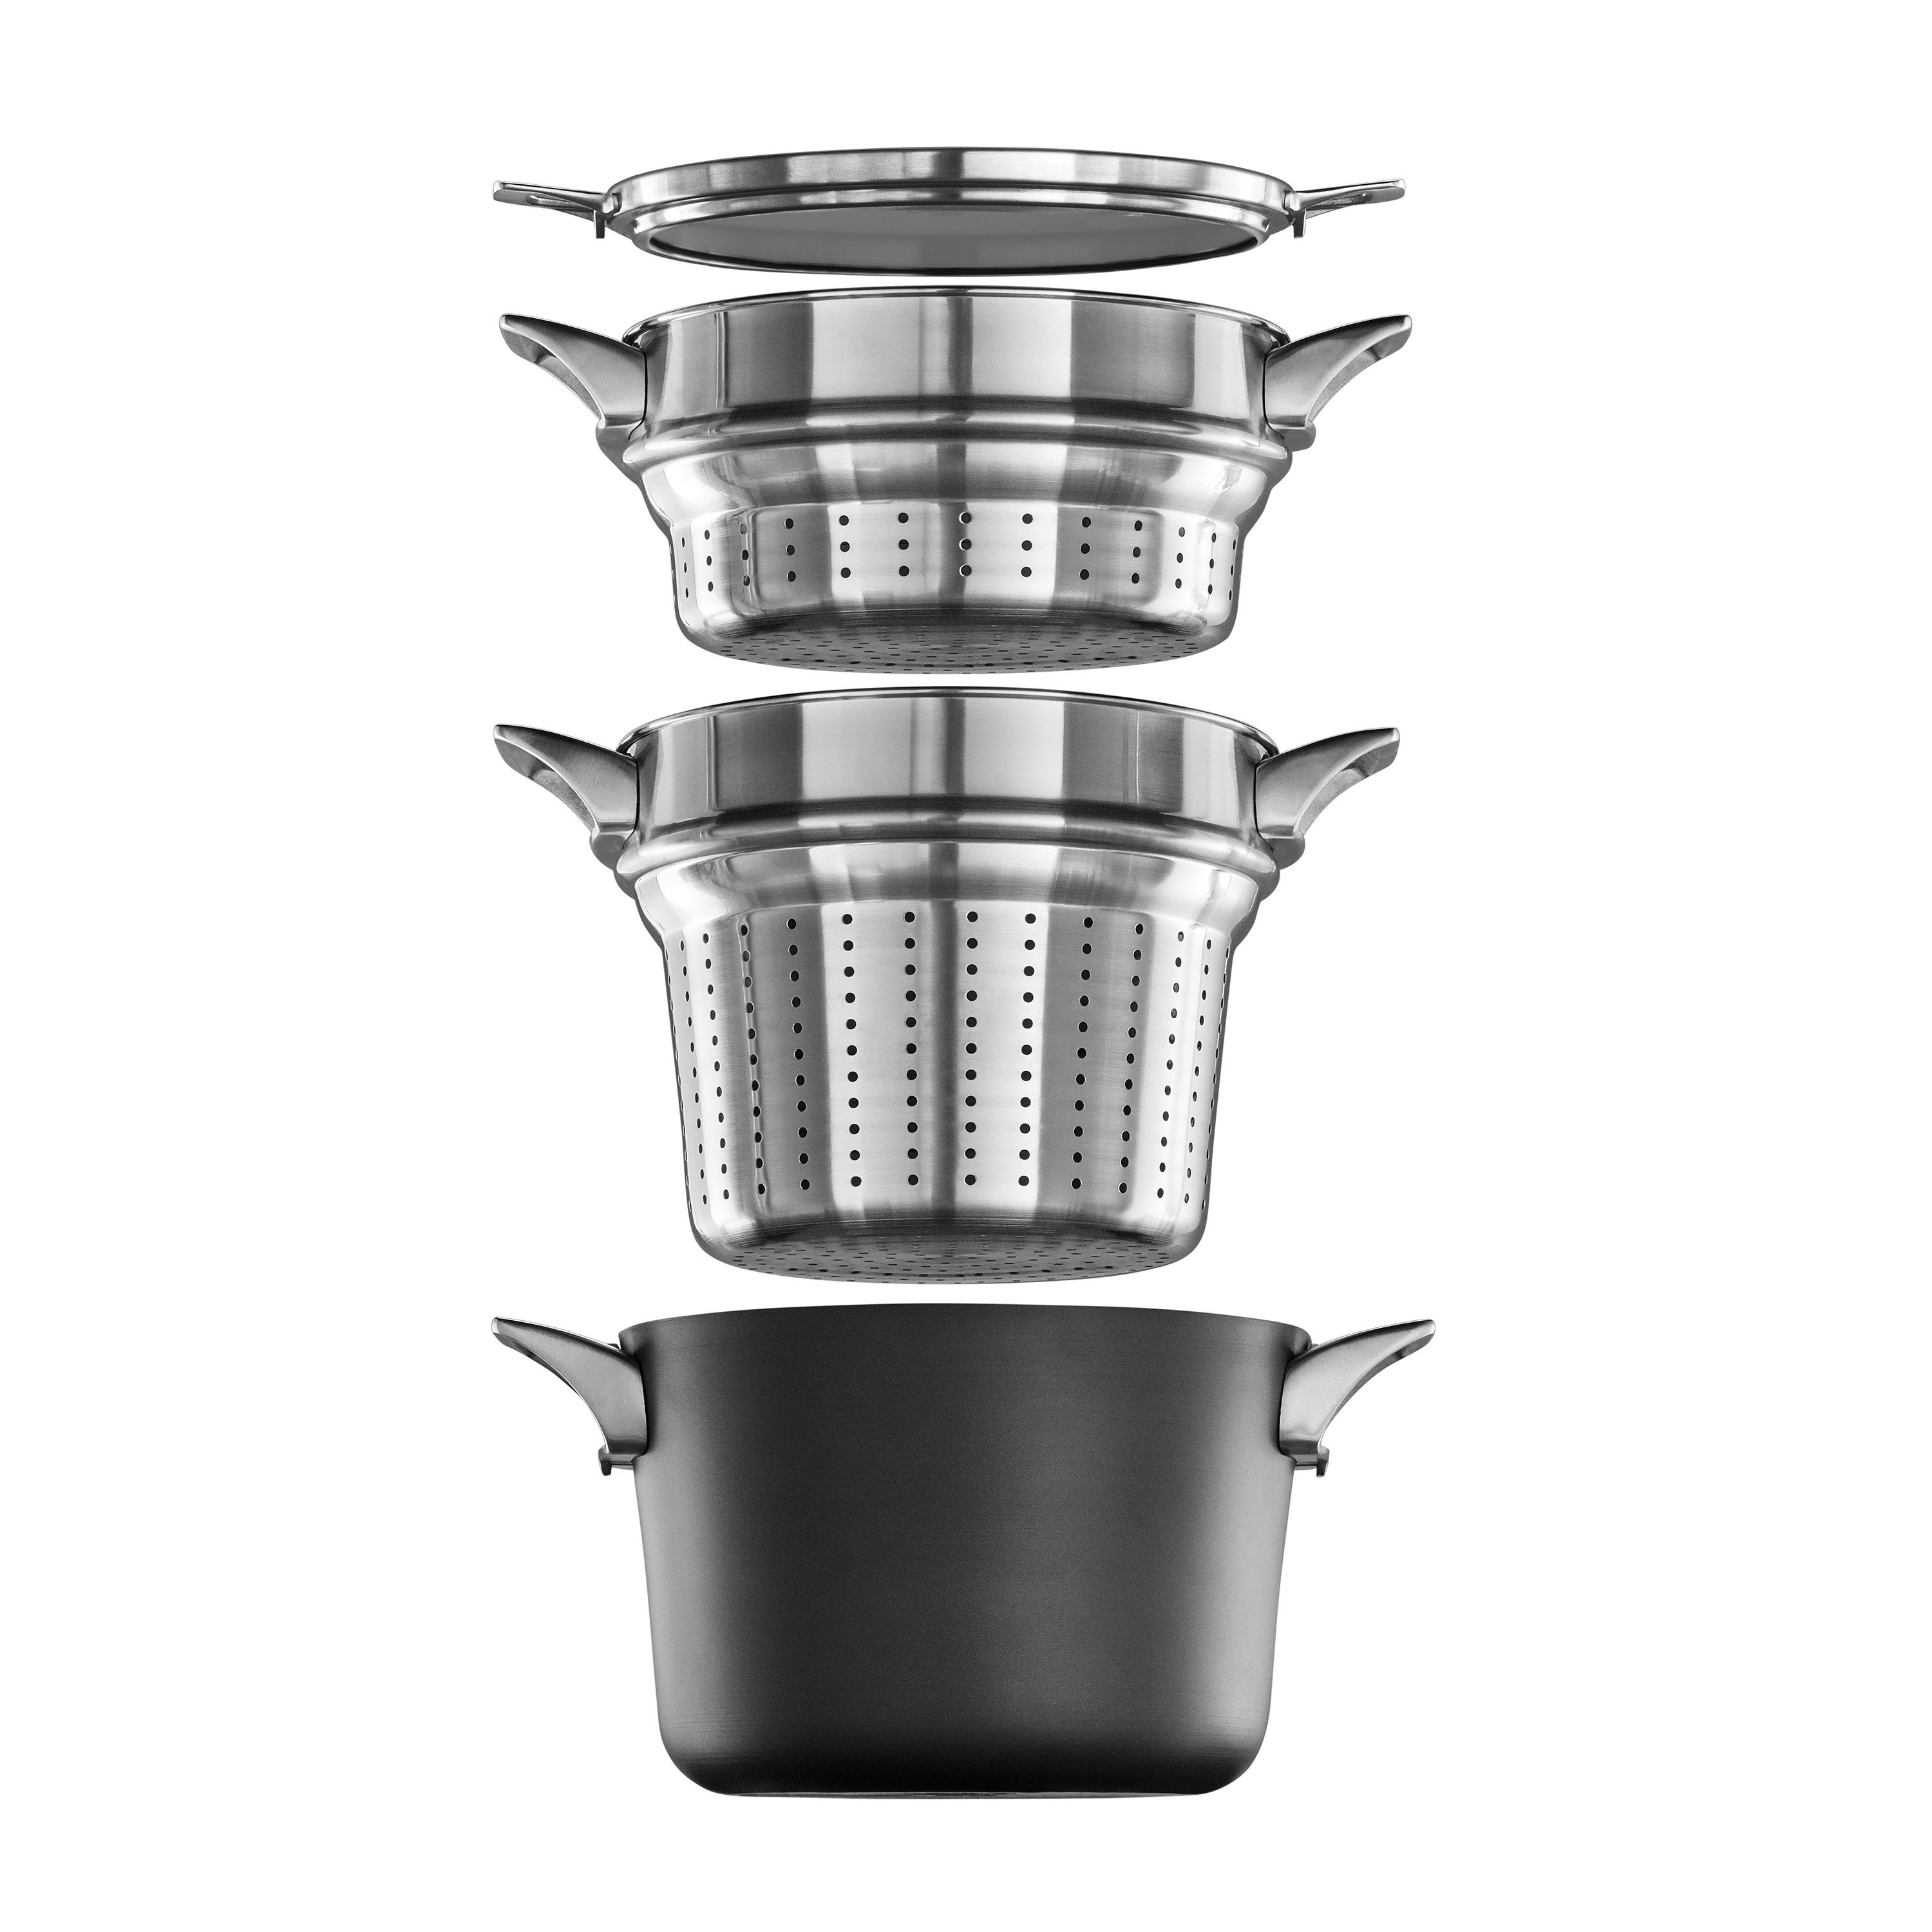 https://assets.wfcdn.com/im/73168622/compr-r85/2152/215206286/calphalon-8-qt-non-stick-hard-anodized-aluminum-steamer-pot-with-lid.jpg